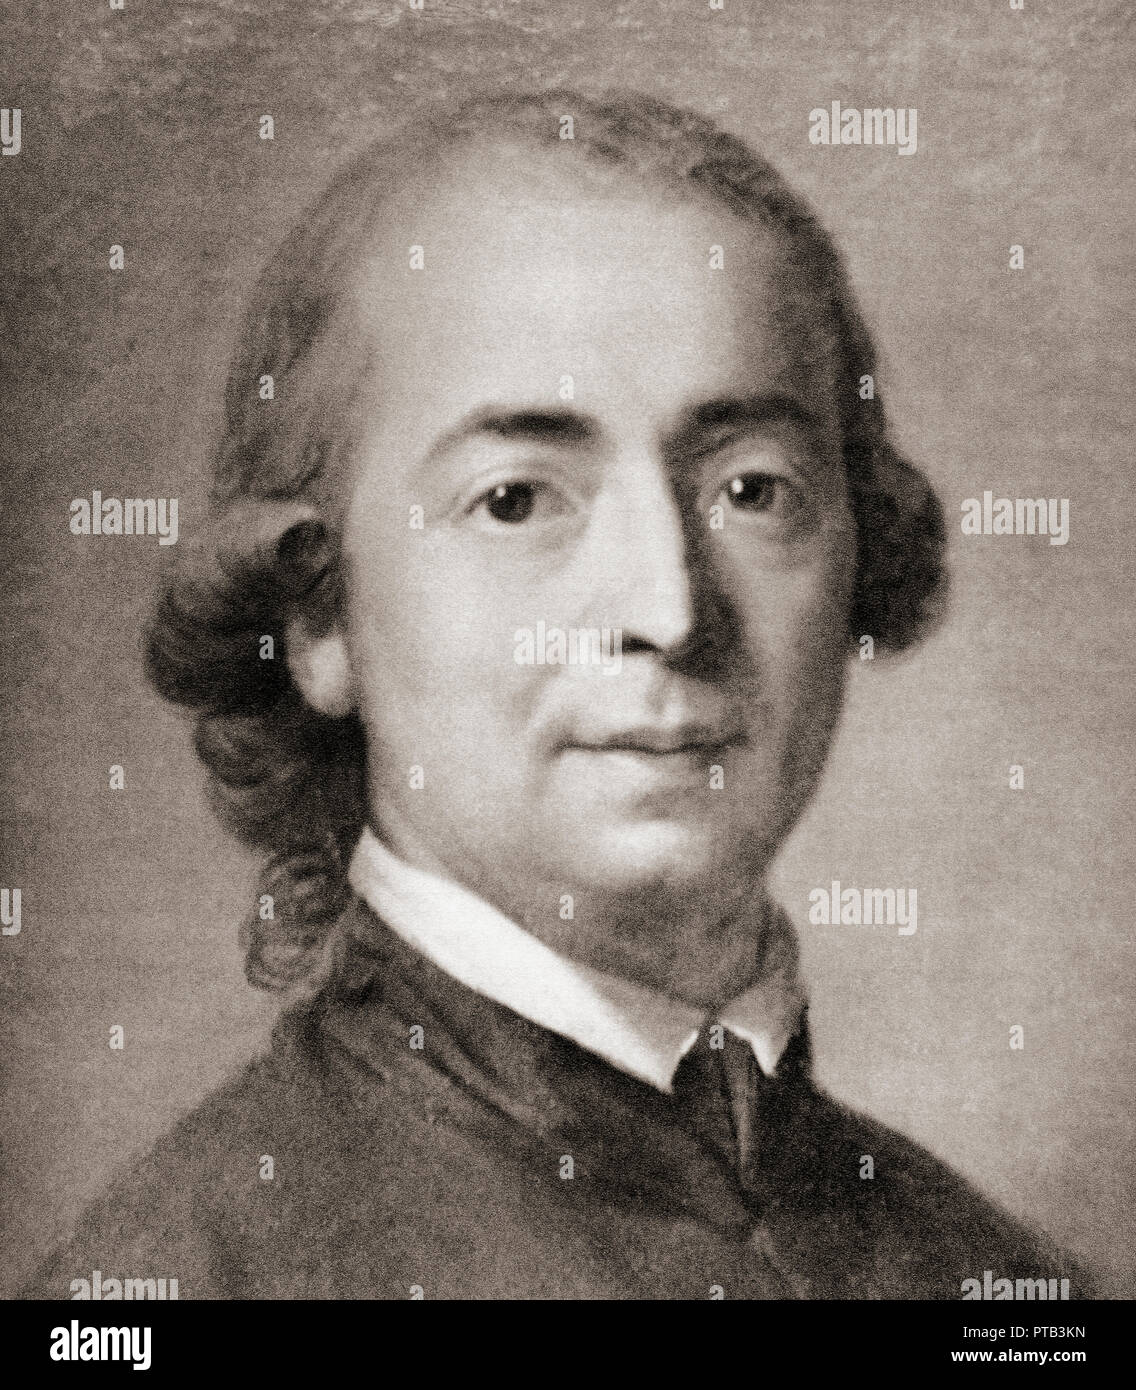 Johann Gottfried Herder, 1744 - 1803. Deutsche Philosoph, Theologe, Dichter und Literaturkritiker. Stockfoto